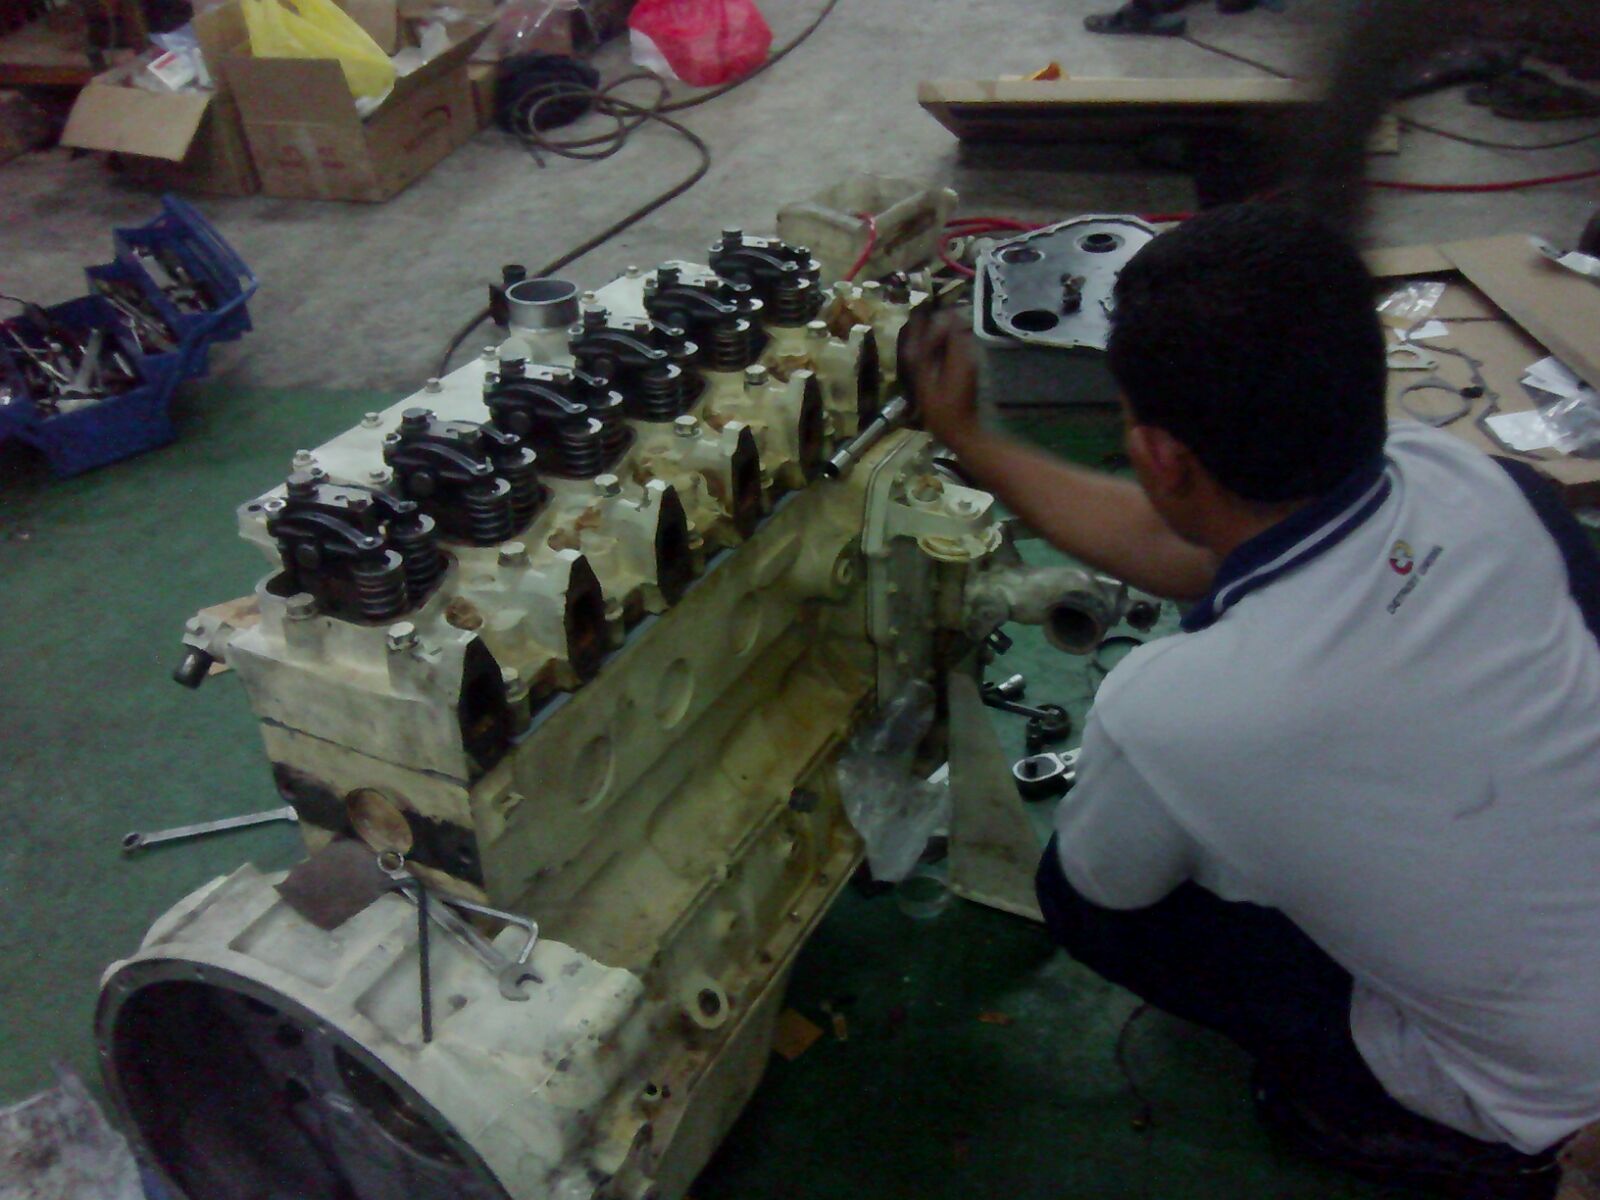 Mechanic repairing engine